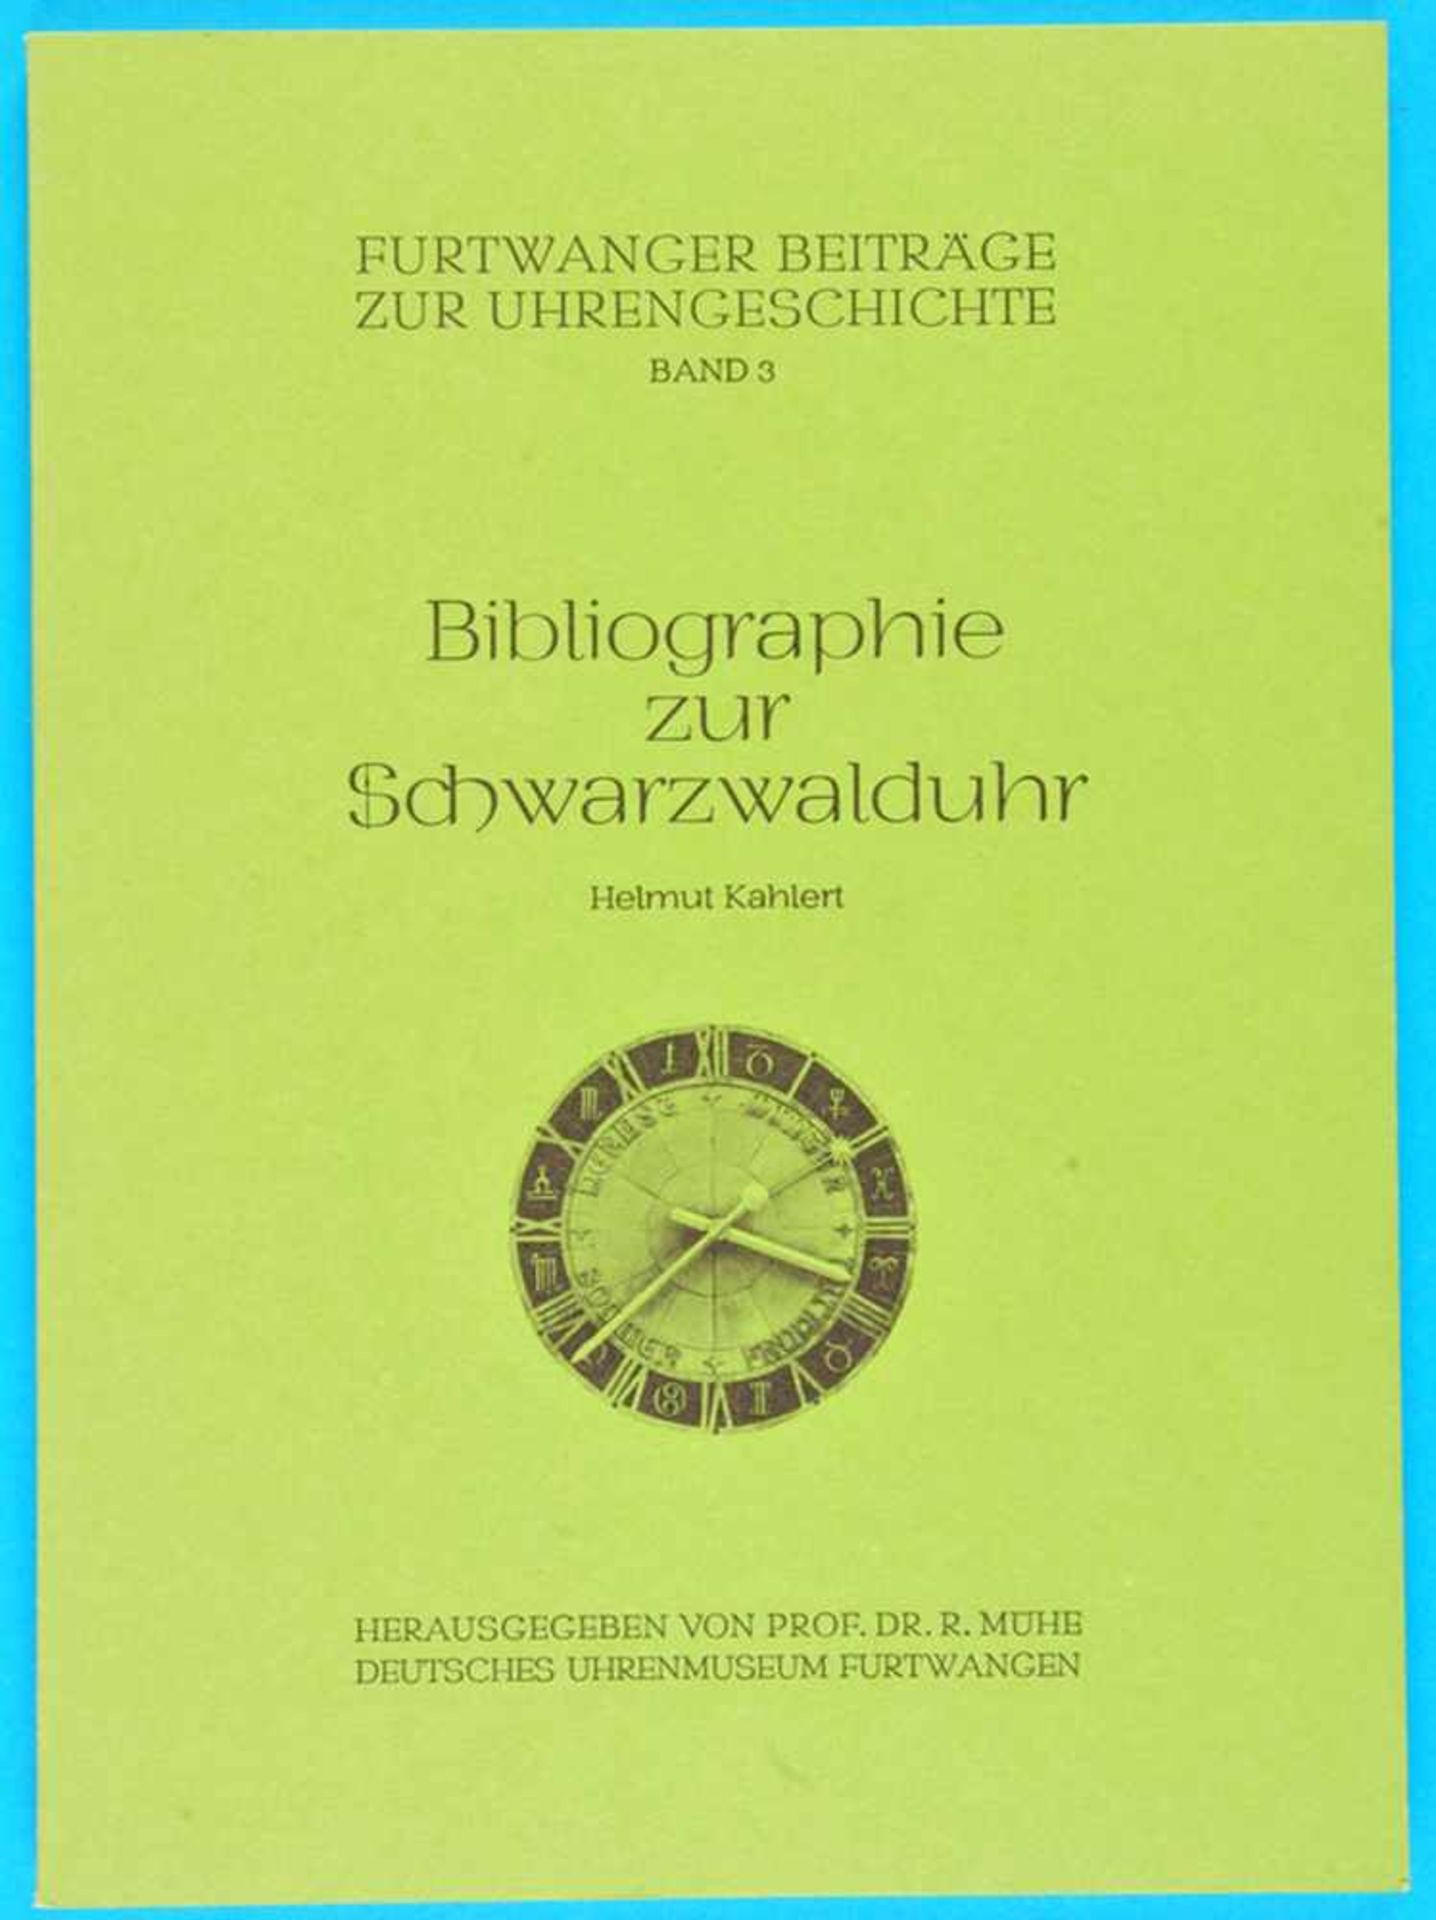 Helmut Kahlert, Bibliographie zur Schwarzwalduhr - Furtwanger Beiträge zur UhrengeschichteHelmut